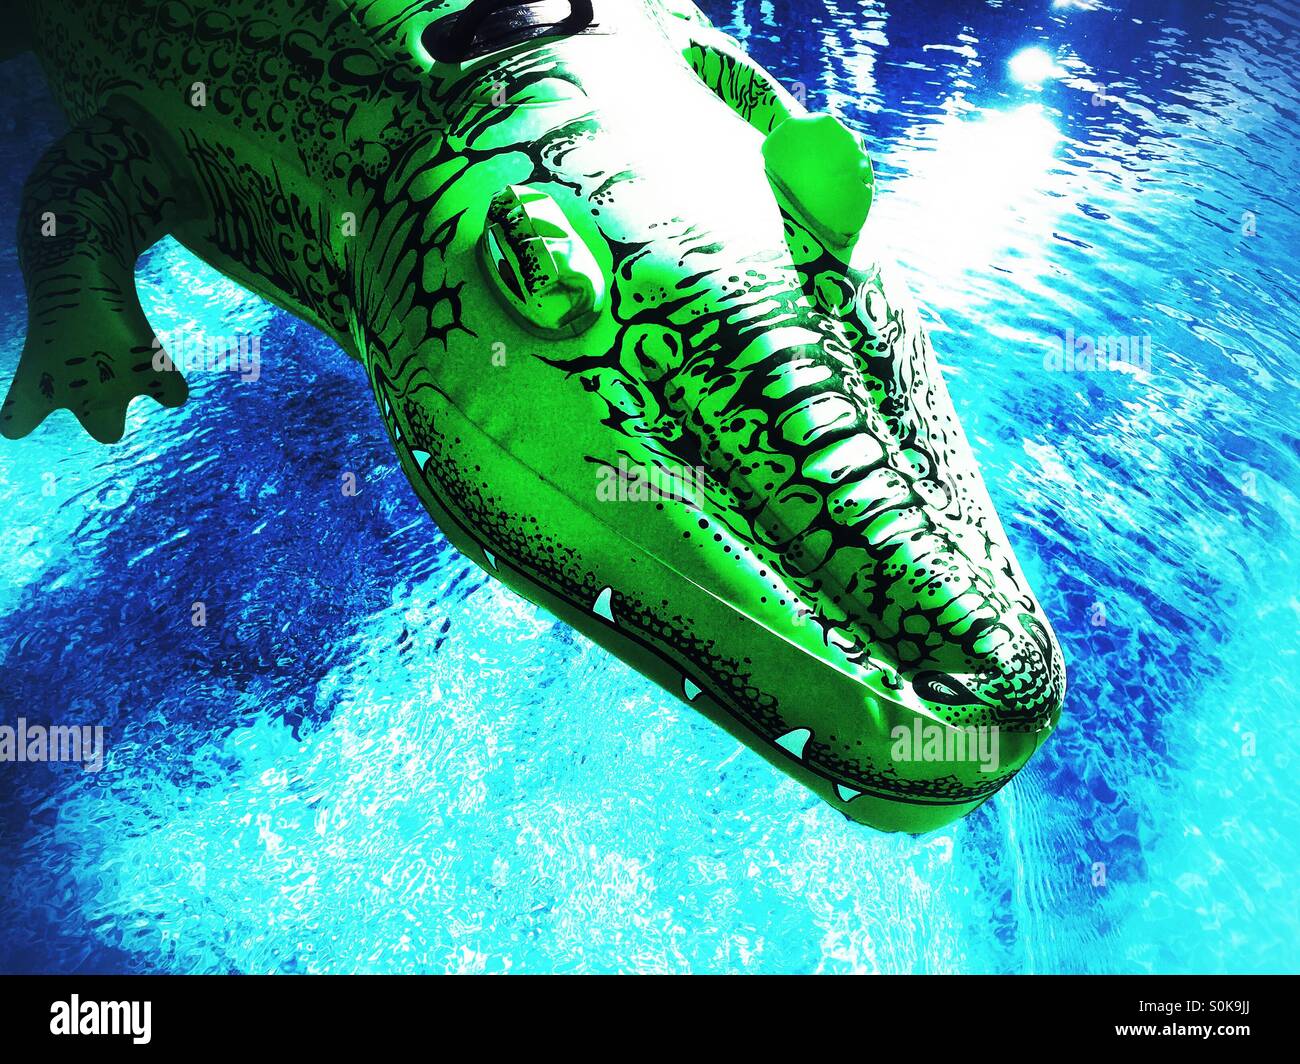 Des dents blanches en avant plan sur ce jouet gonflable alligator flottant sur l'eau. Banque D'Images